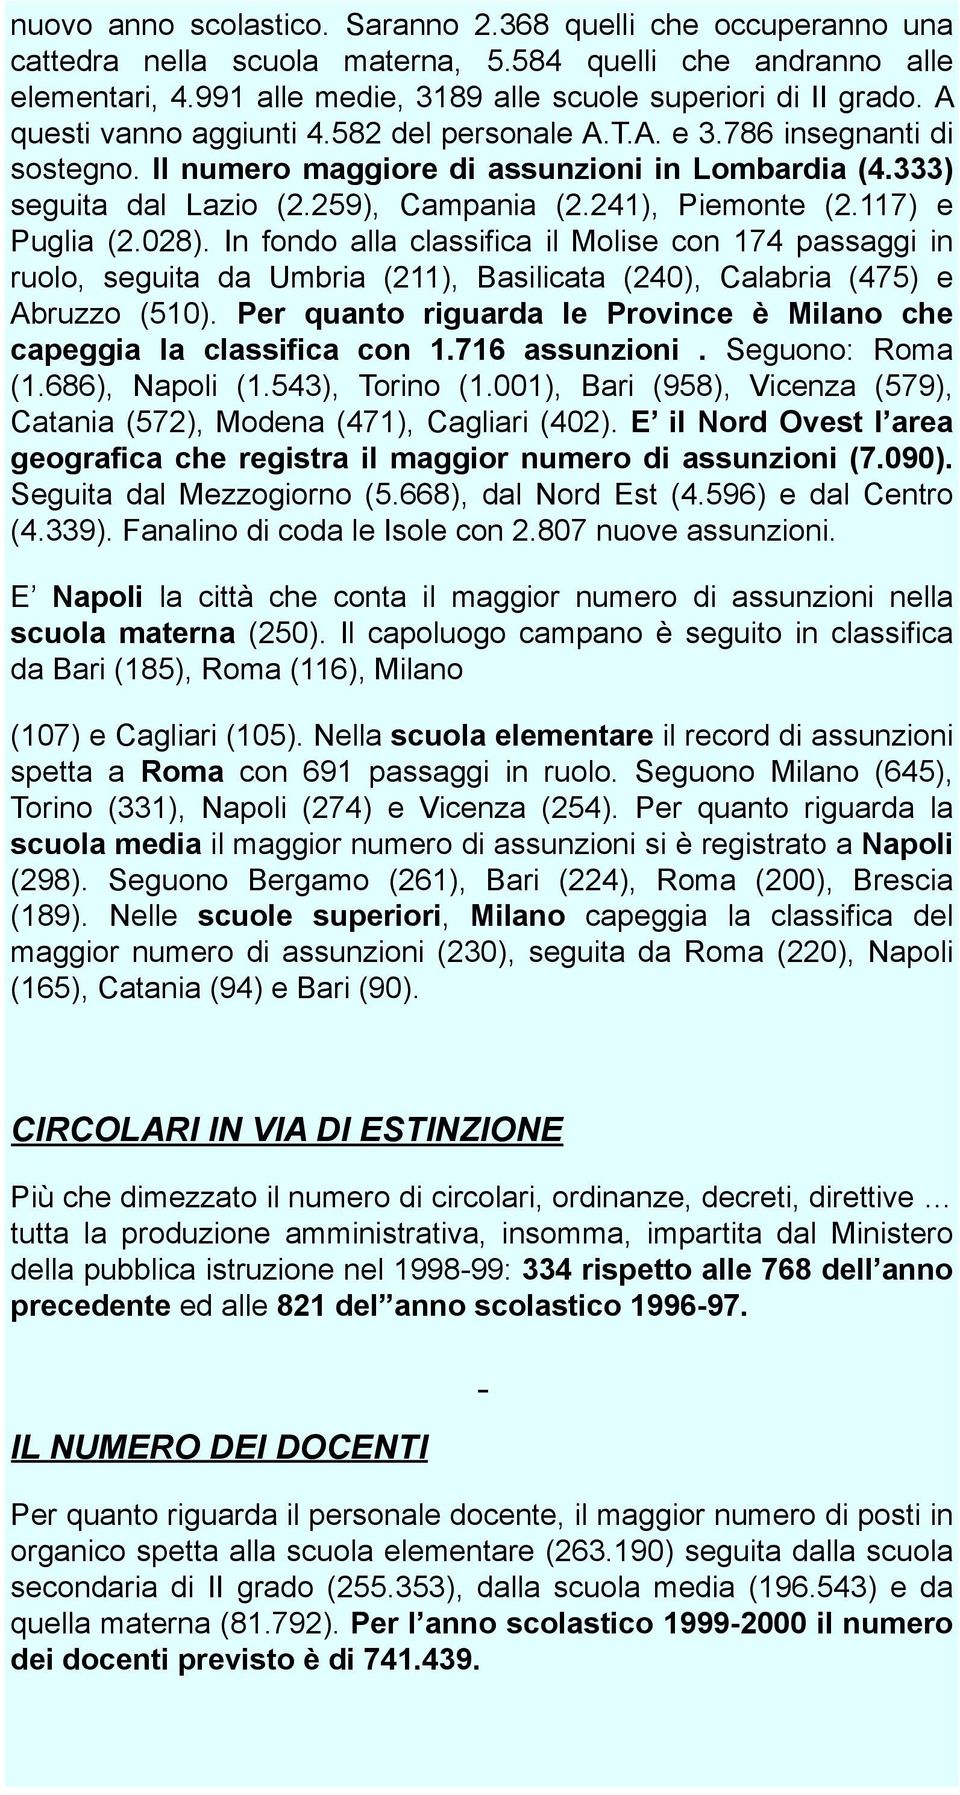 117) e Puglia (2.028). In fondo alla classifica il Molise con 174 passaggi in ruolo, seguita da Umbria (211), Basilicata (240), Calabria (475) e Abruzzo (510).